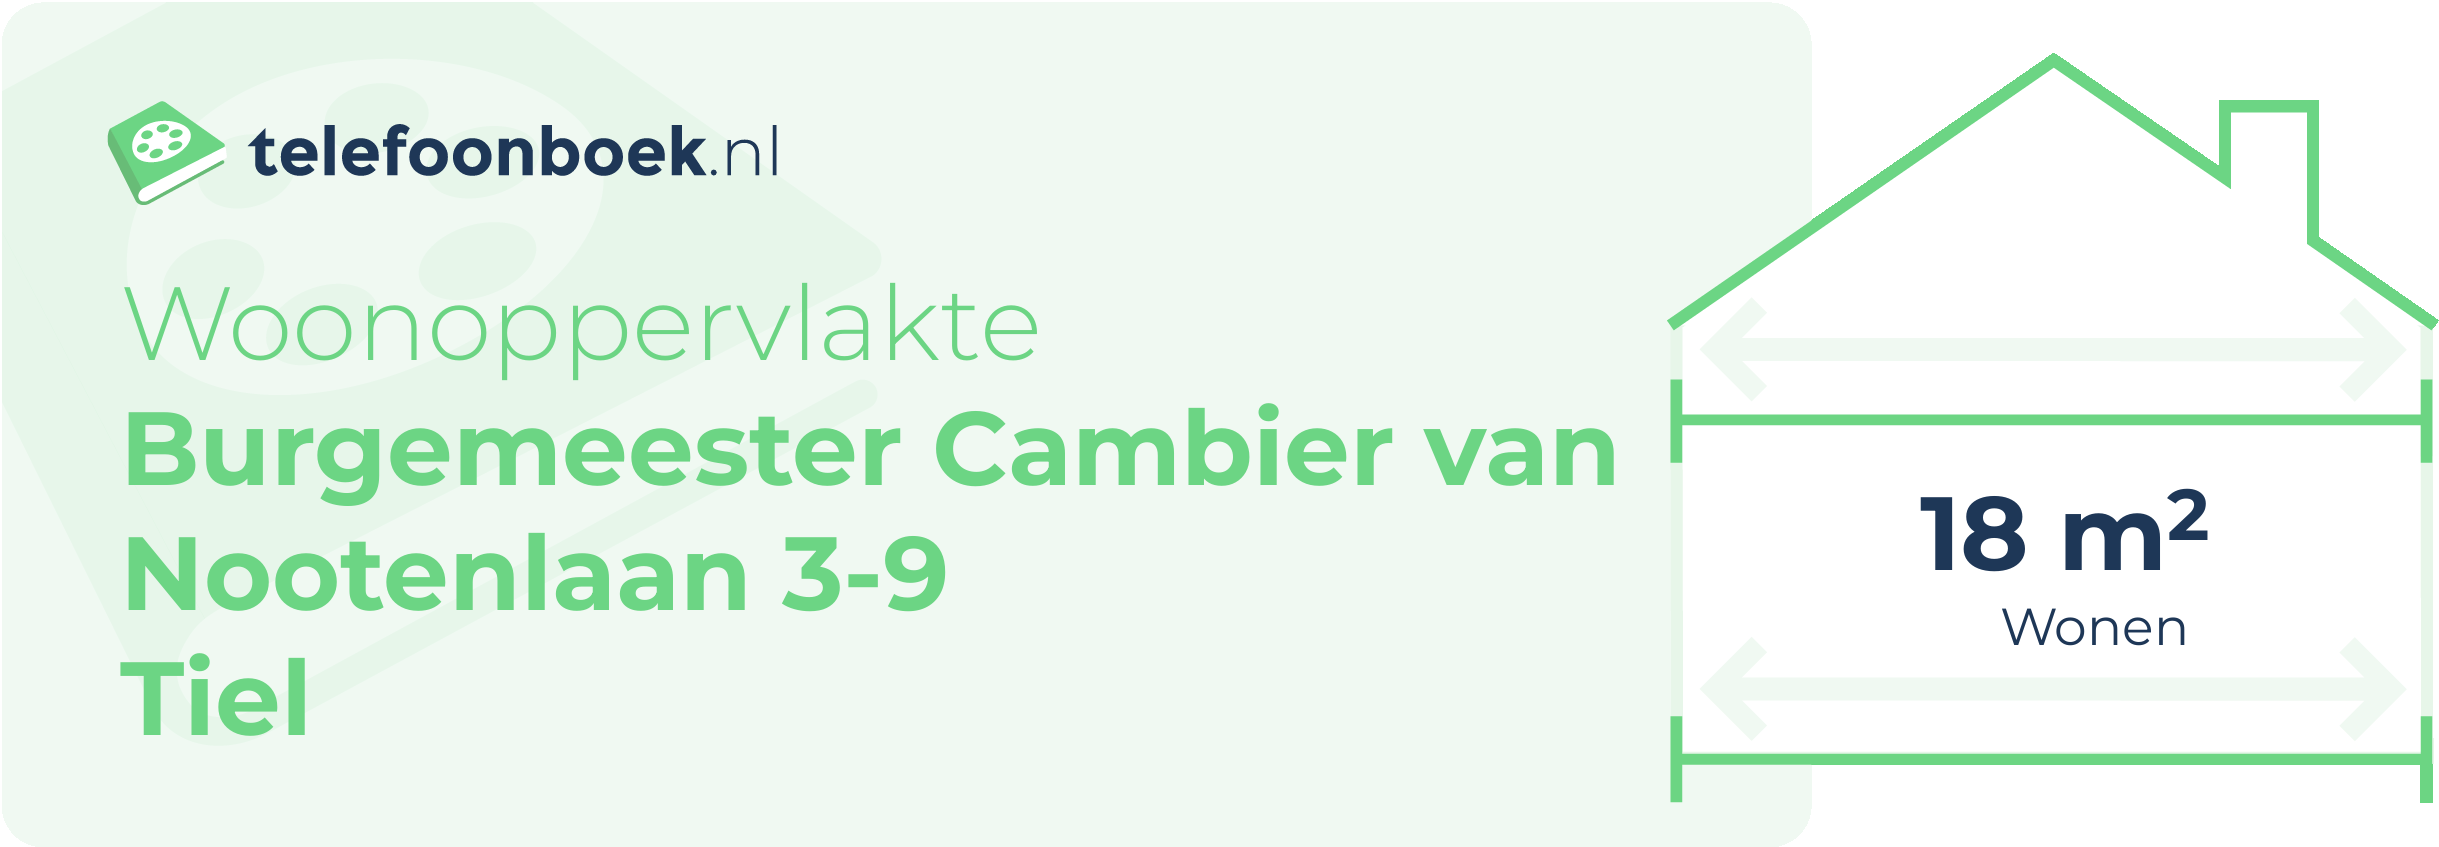 Woonoppervlakte Burgemeester Cambier Van Nootenlaan 3-9 Tiel